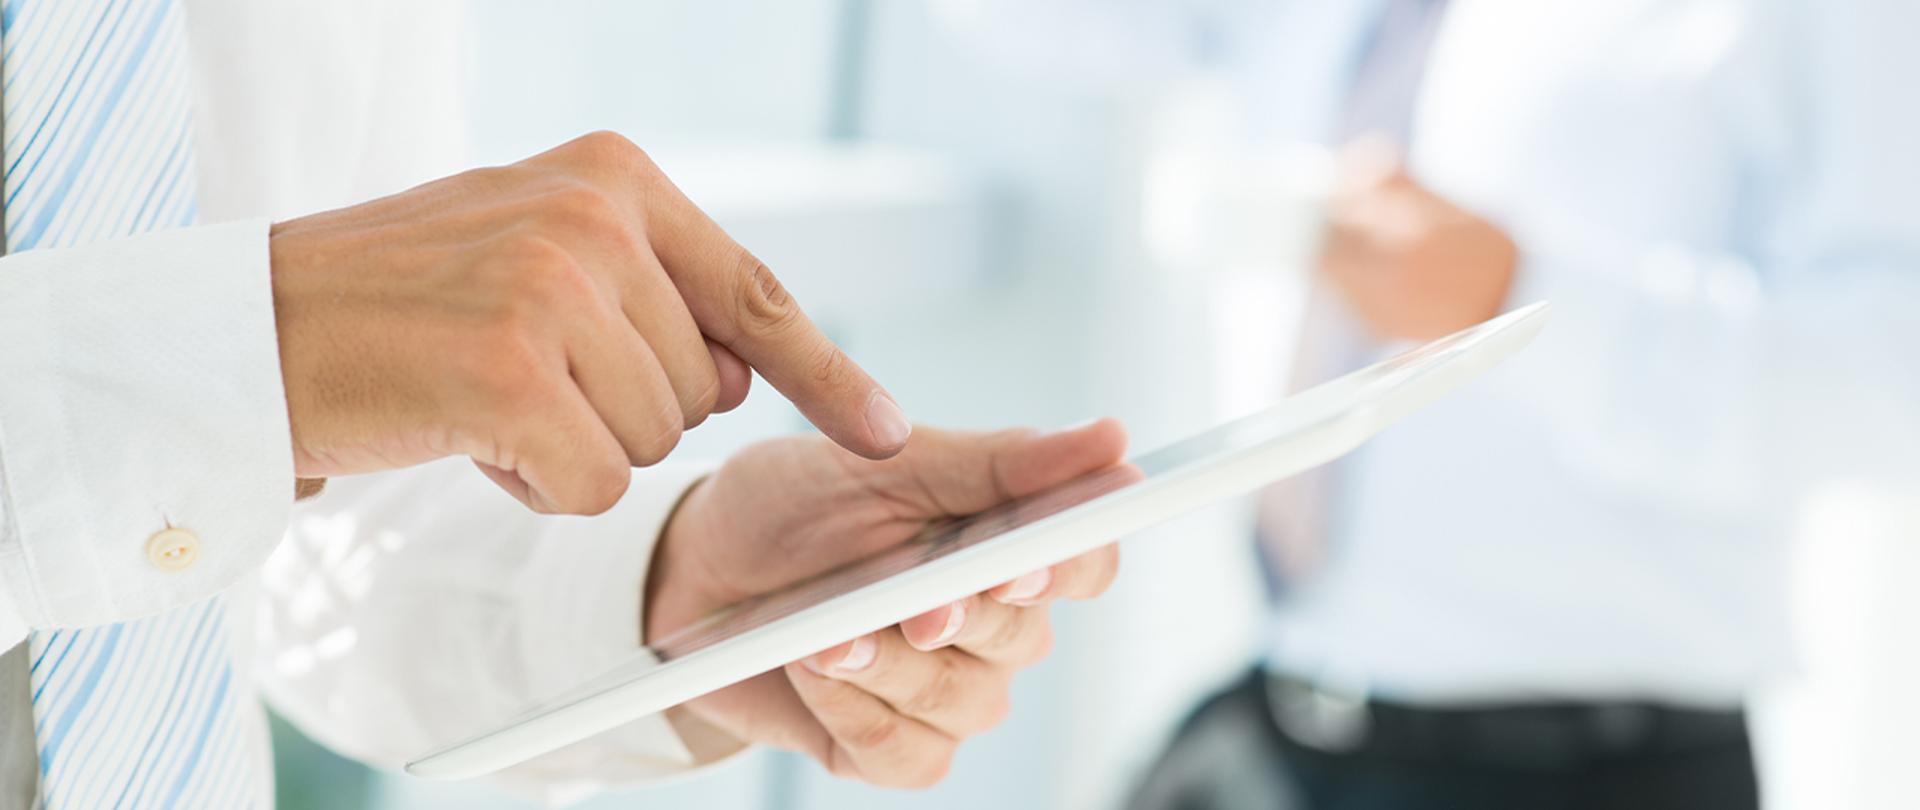 Przedsiębiorcy otrzymali 140 mld zł z tarczy antykryzysowej - Grafika z dłonią trzymającą tablet